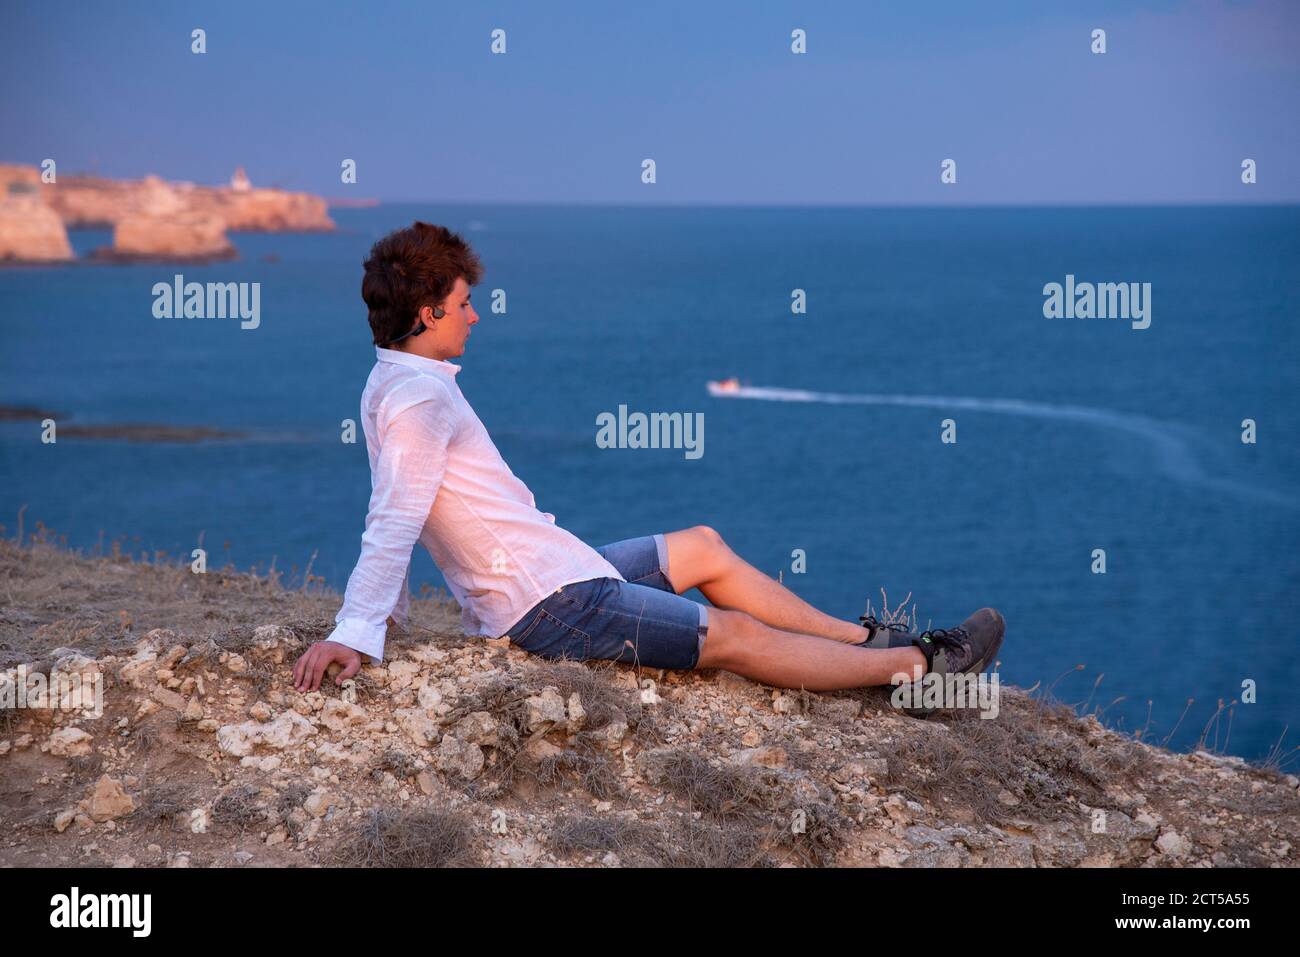 Un joven está de pie en una playa rocosa al atardecer. Foto de stock